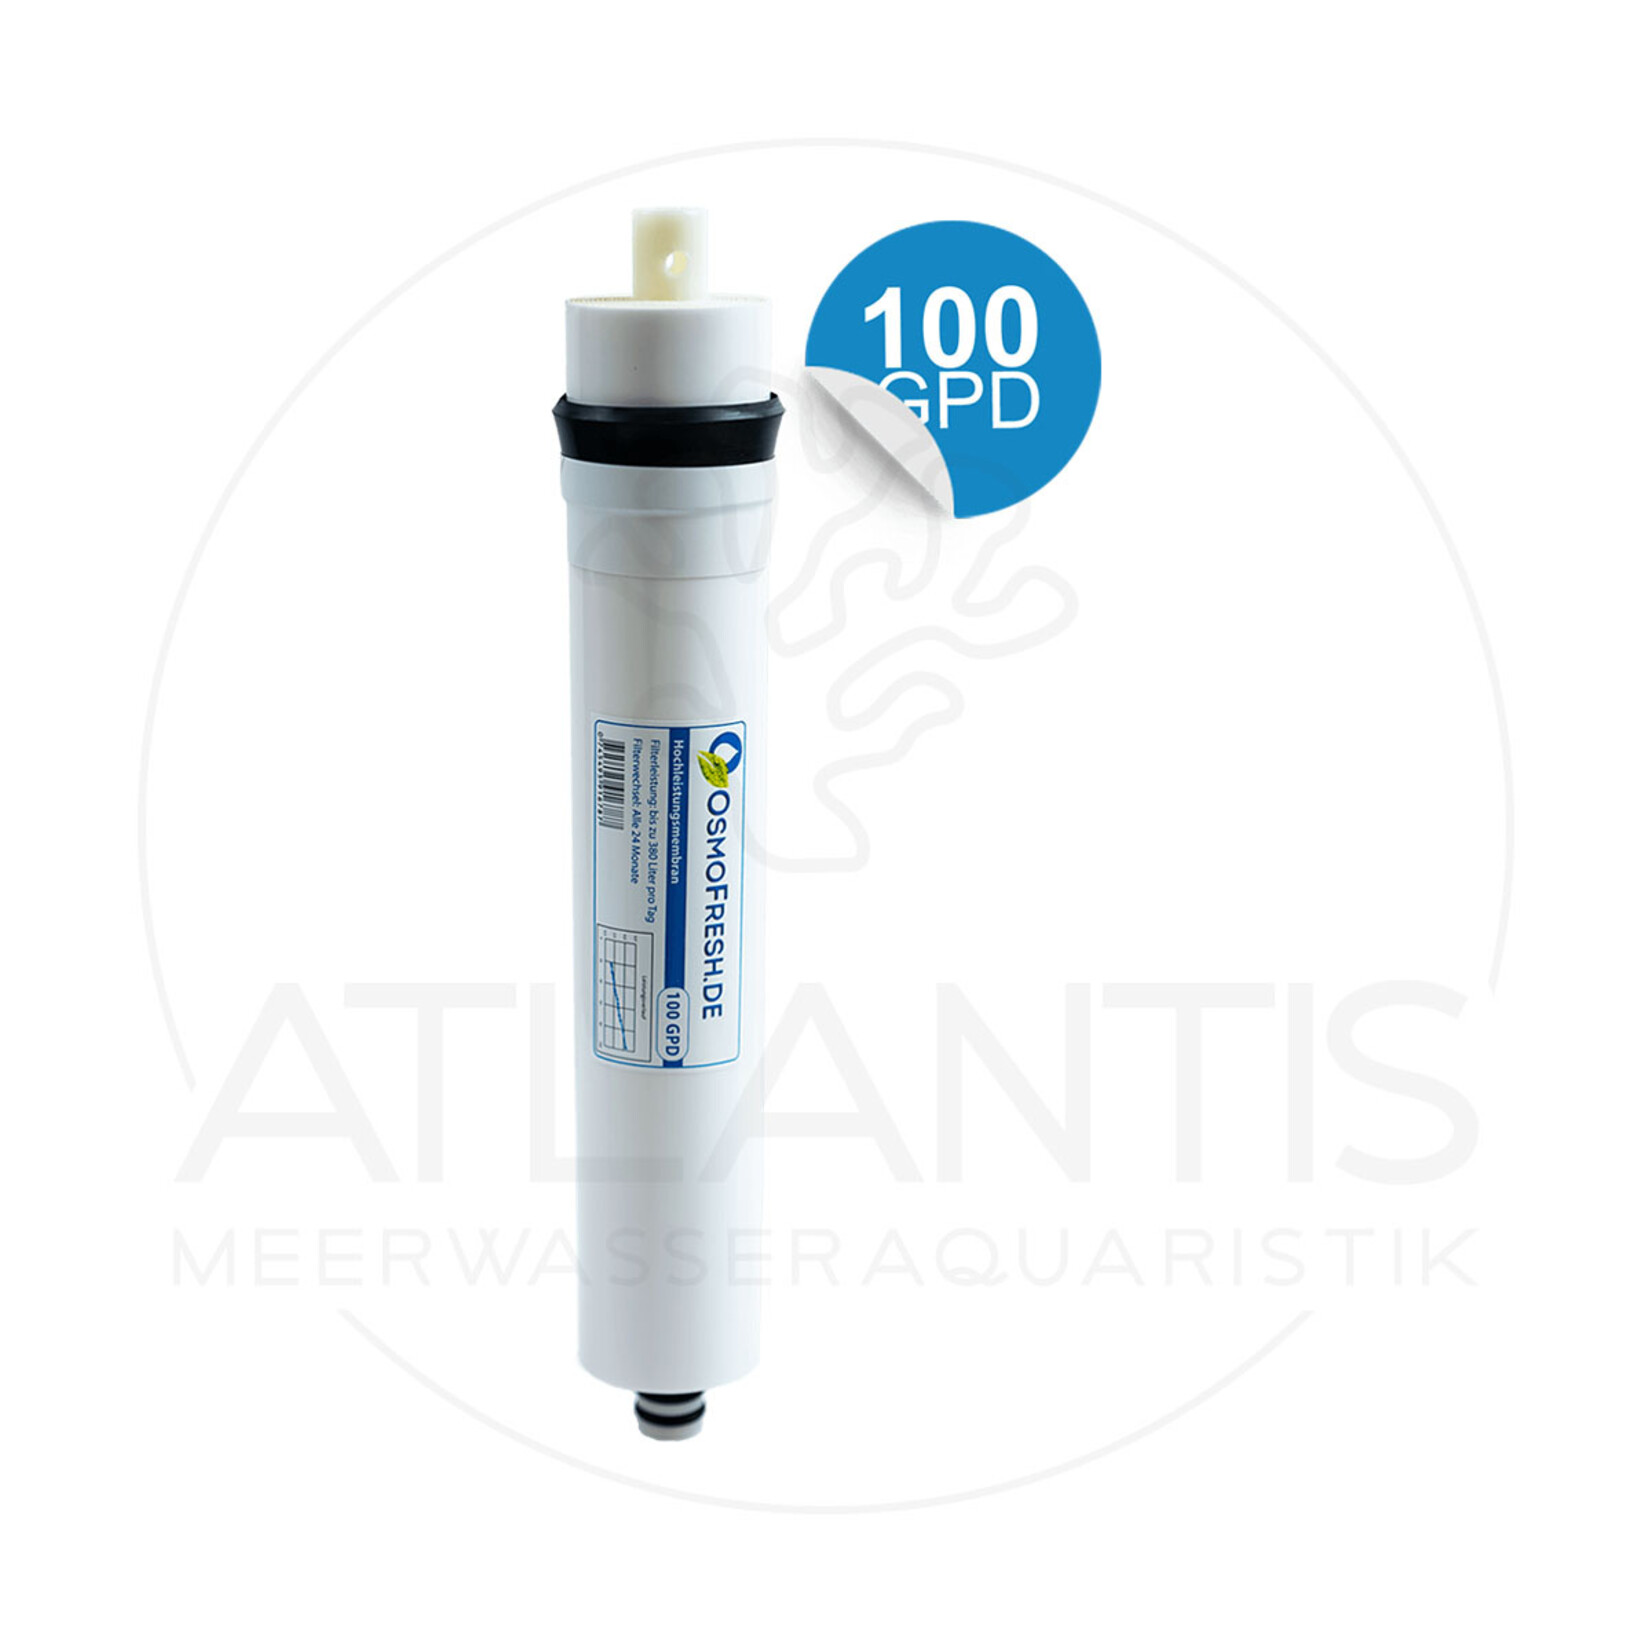 OsmoPerfekt Mini - Osmose-Membrane - 100 GPD - 380 L